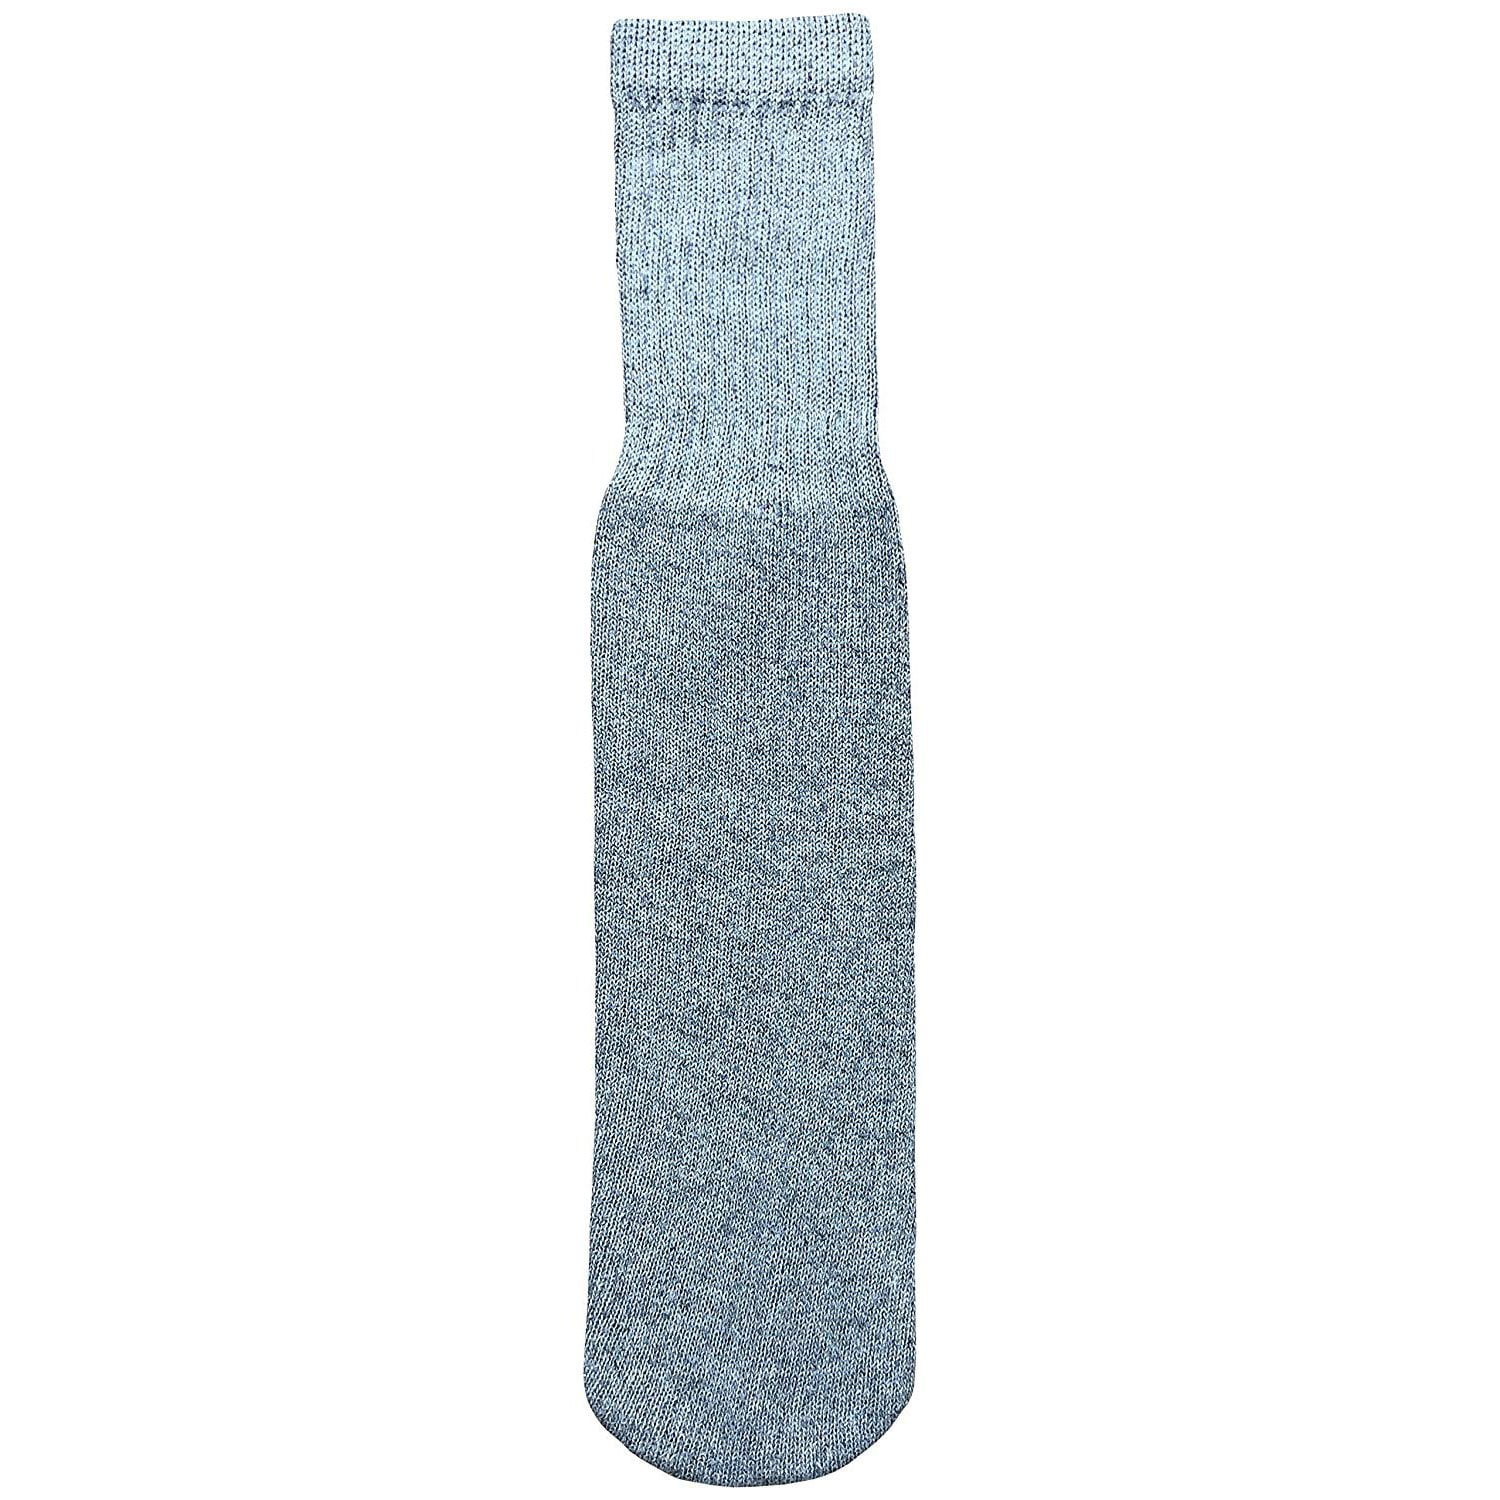 SOCKS'NBULK Mens Wholesale Cotton Tube Socks - Gray Tube Socks For Men ...